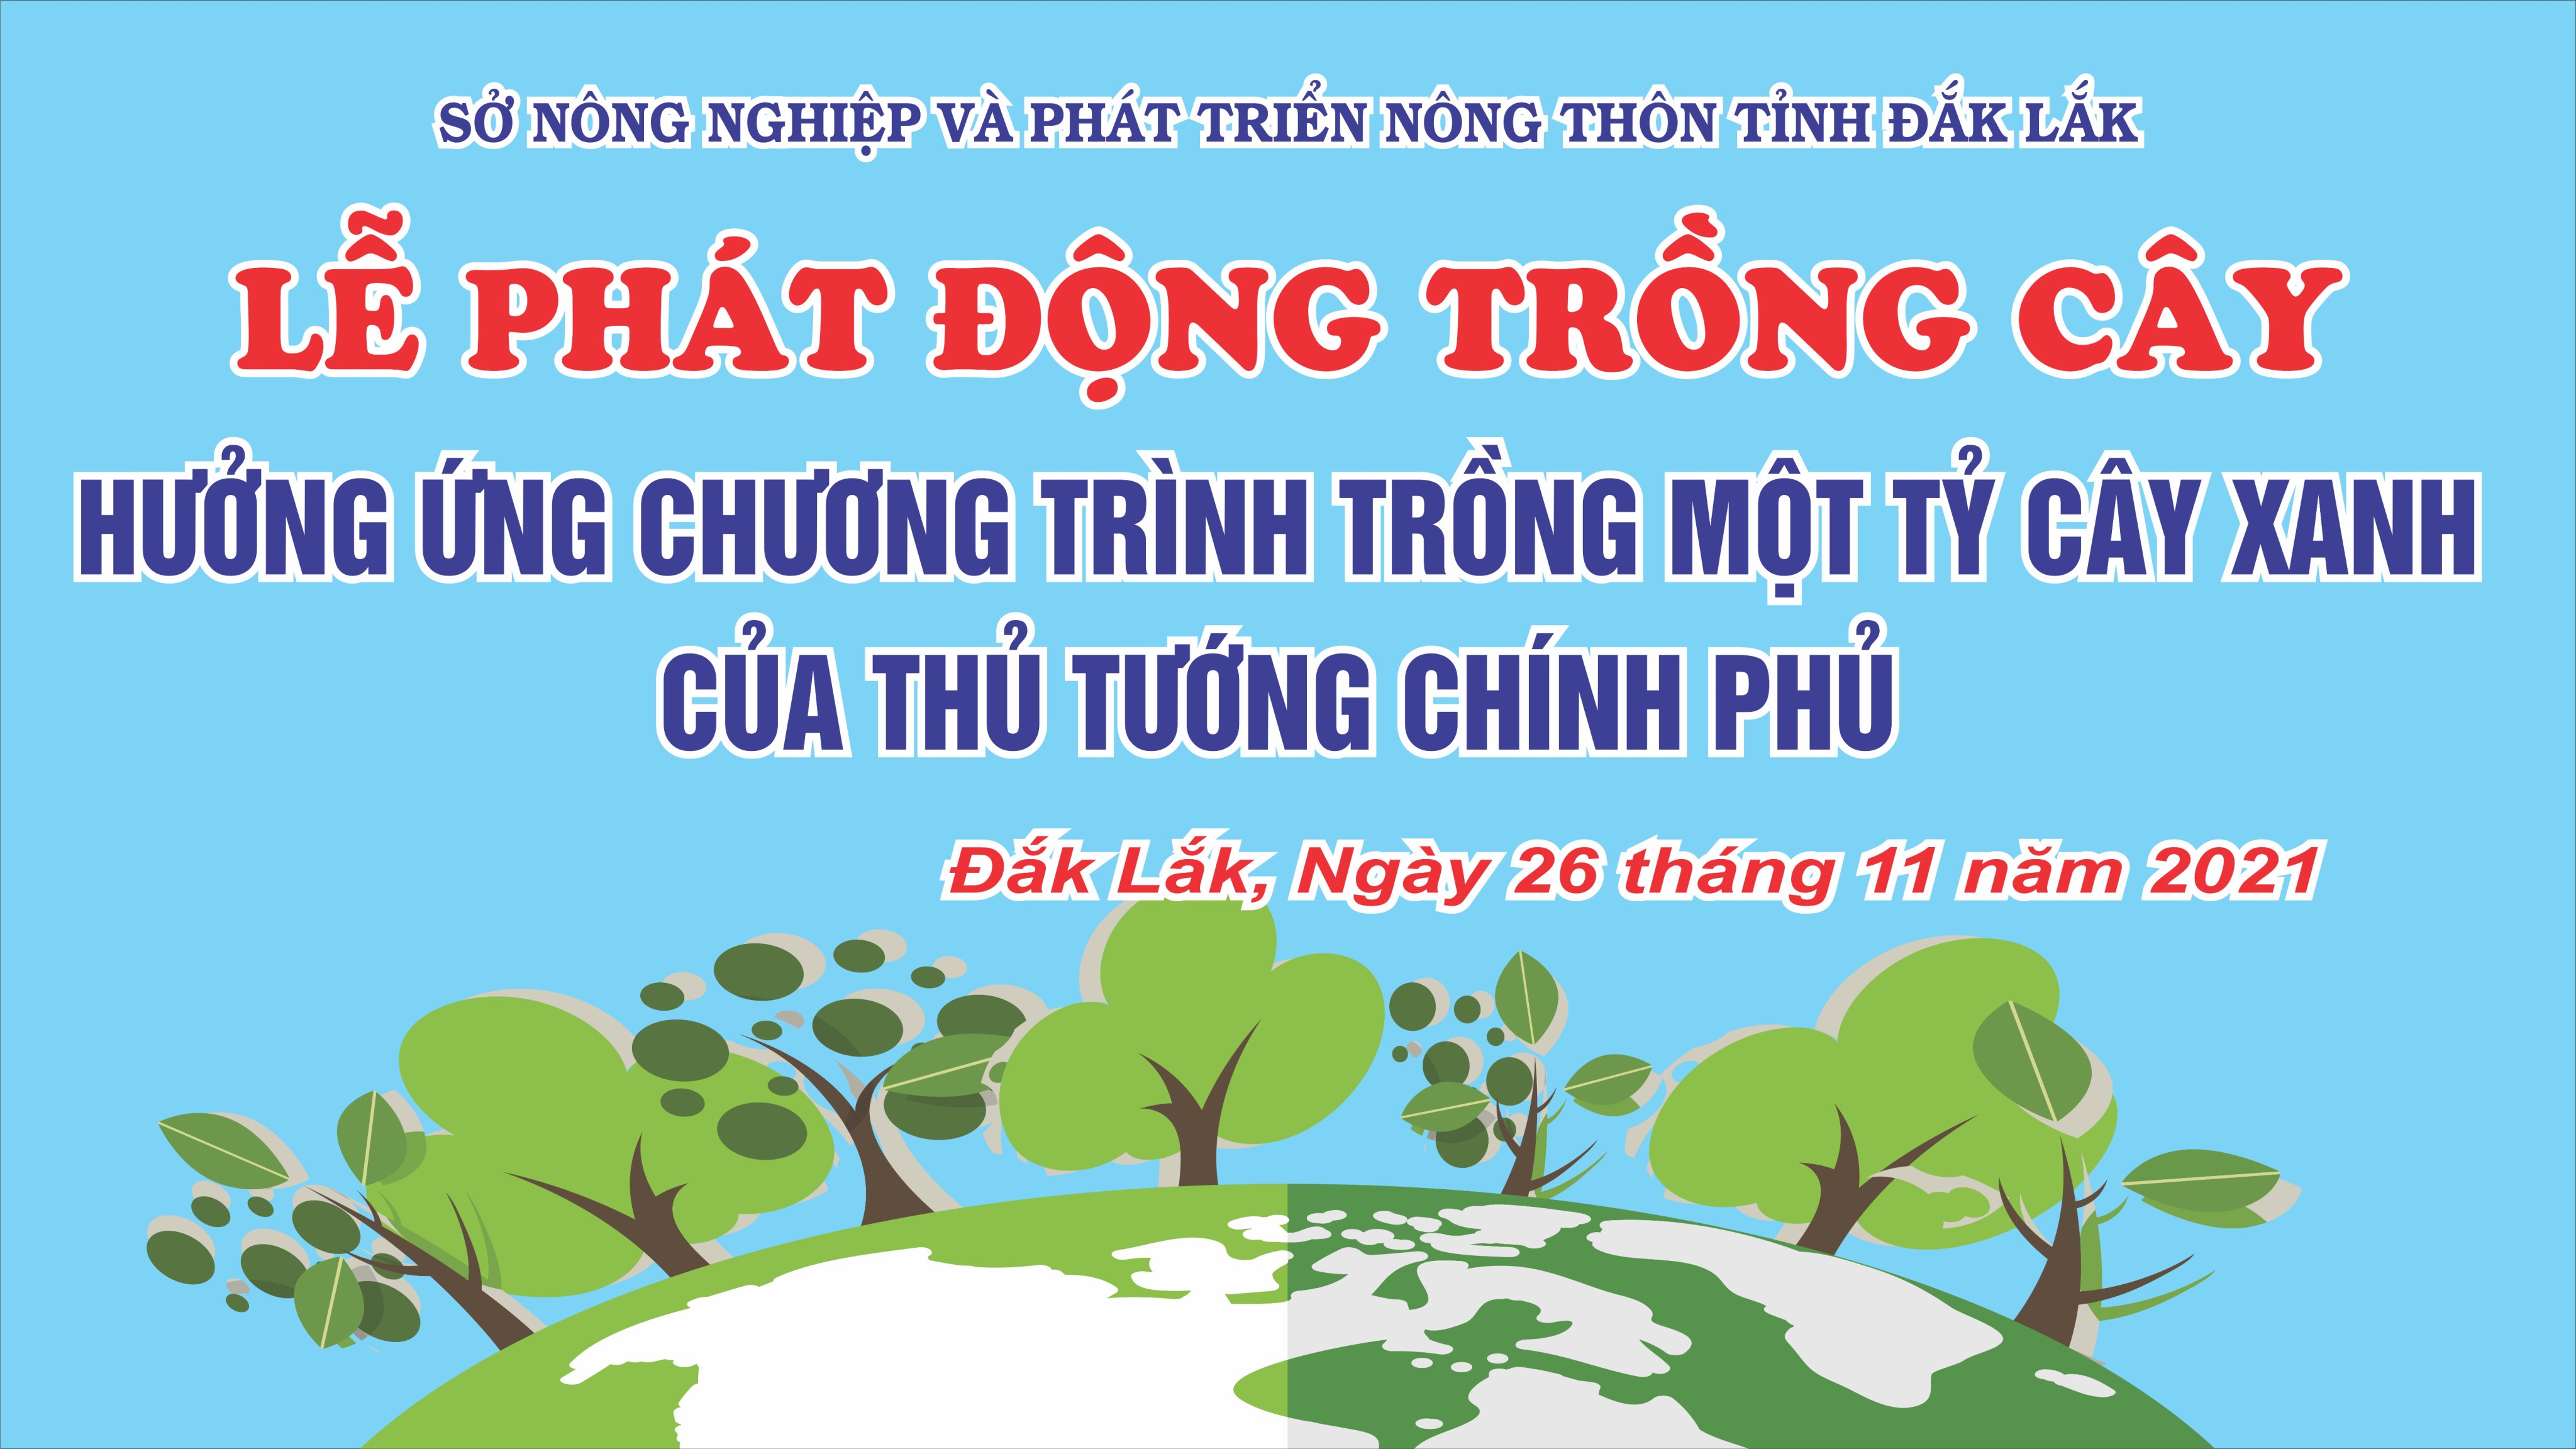 Đắk Lắk phát động lễ trồng cây nhân ngày Lâm nghiệp Việt Nam